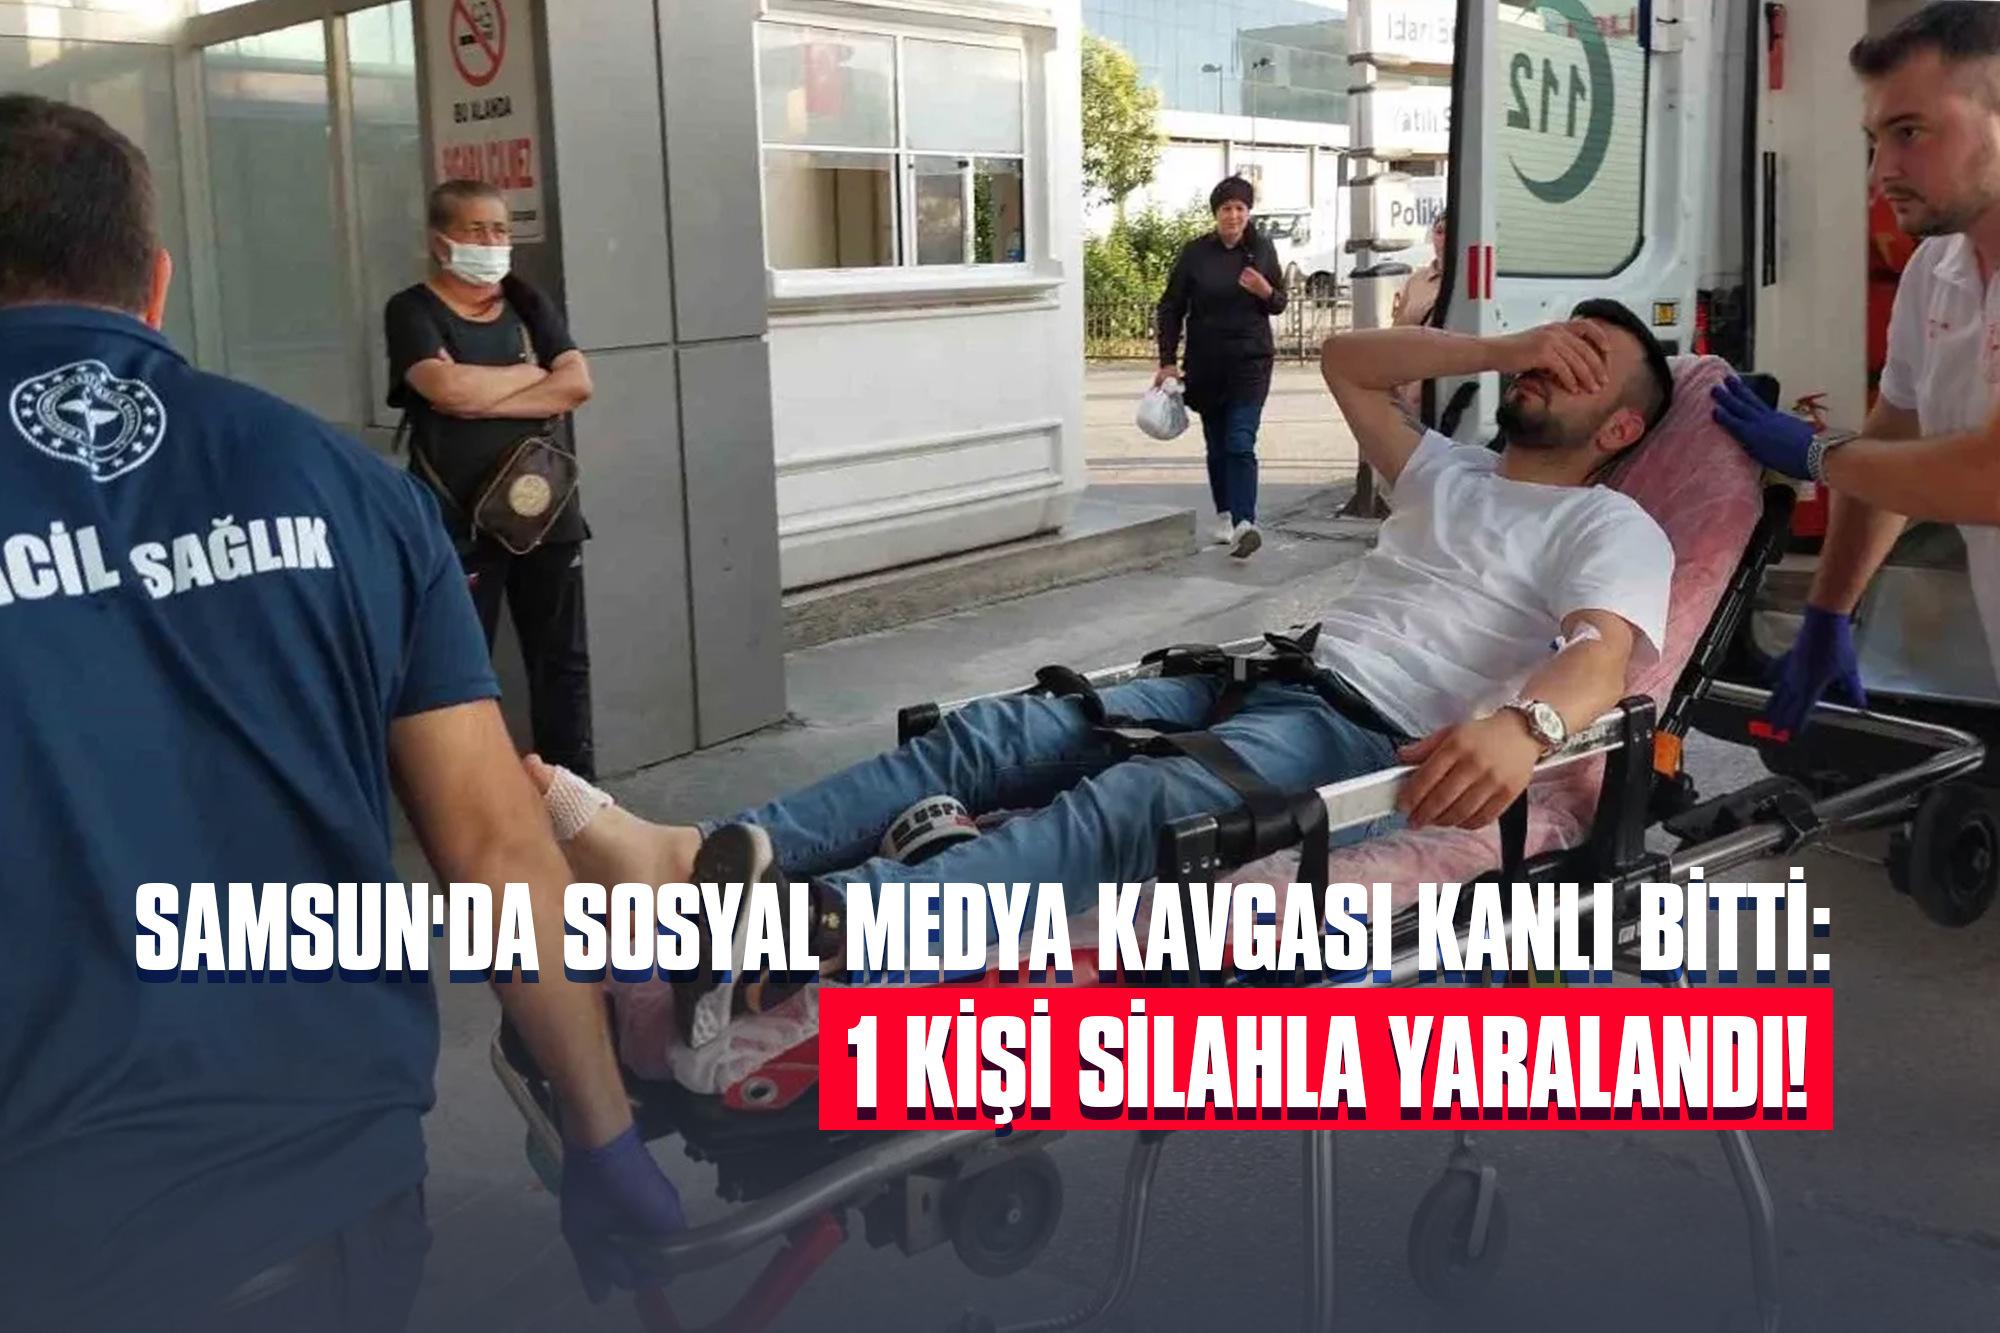 Samsun'da Sosyal Medya Kavgası Kanlı Bitti: 1 Kişi Silahla Yaralandı!